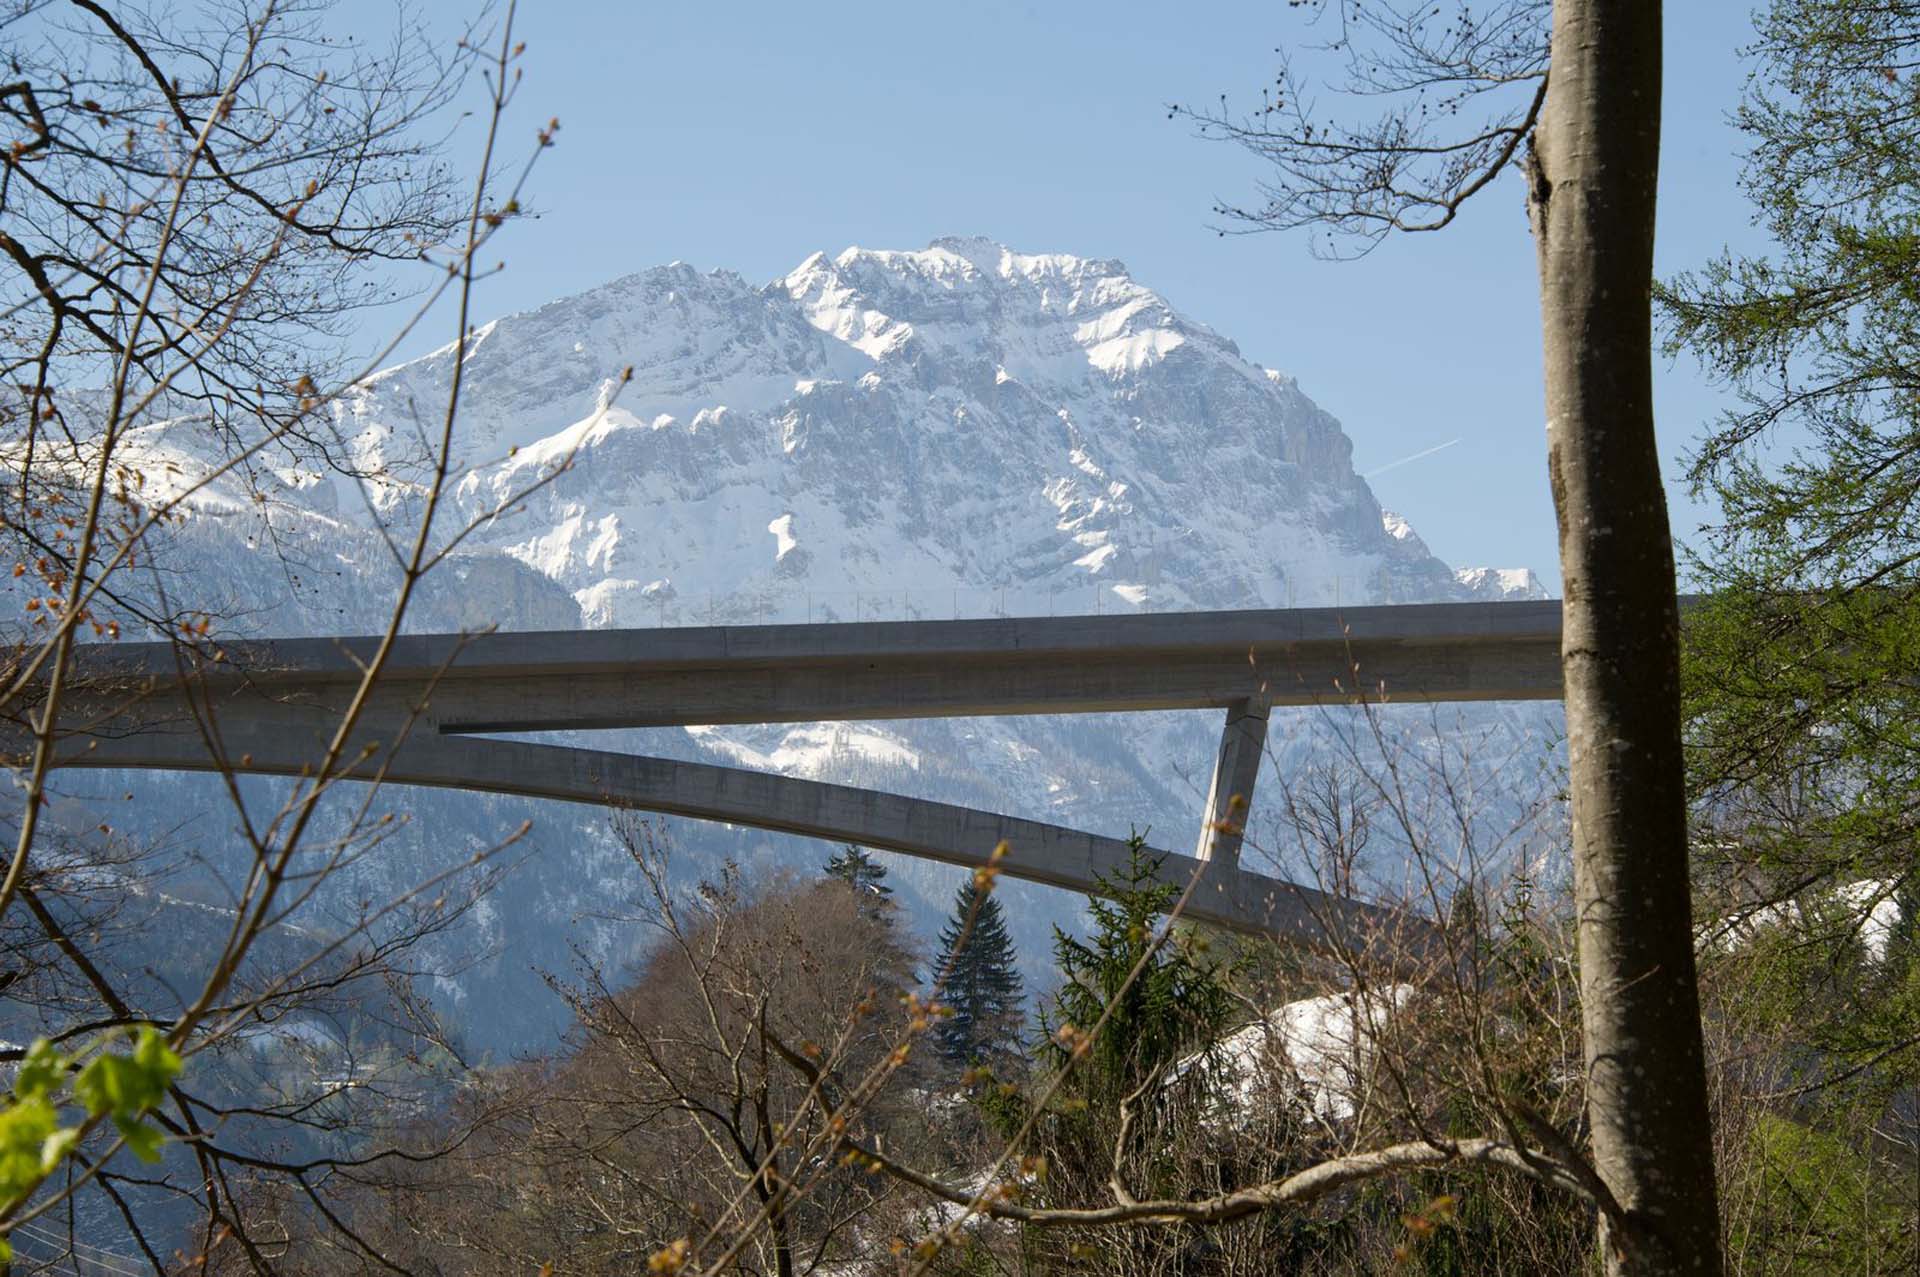 Jakob safety net for tamina bridge, switzerland